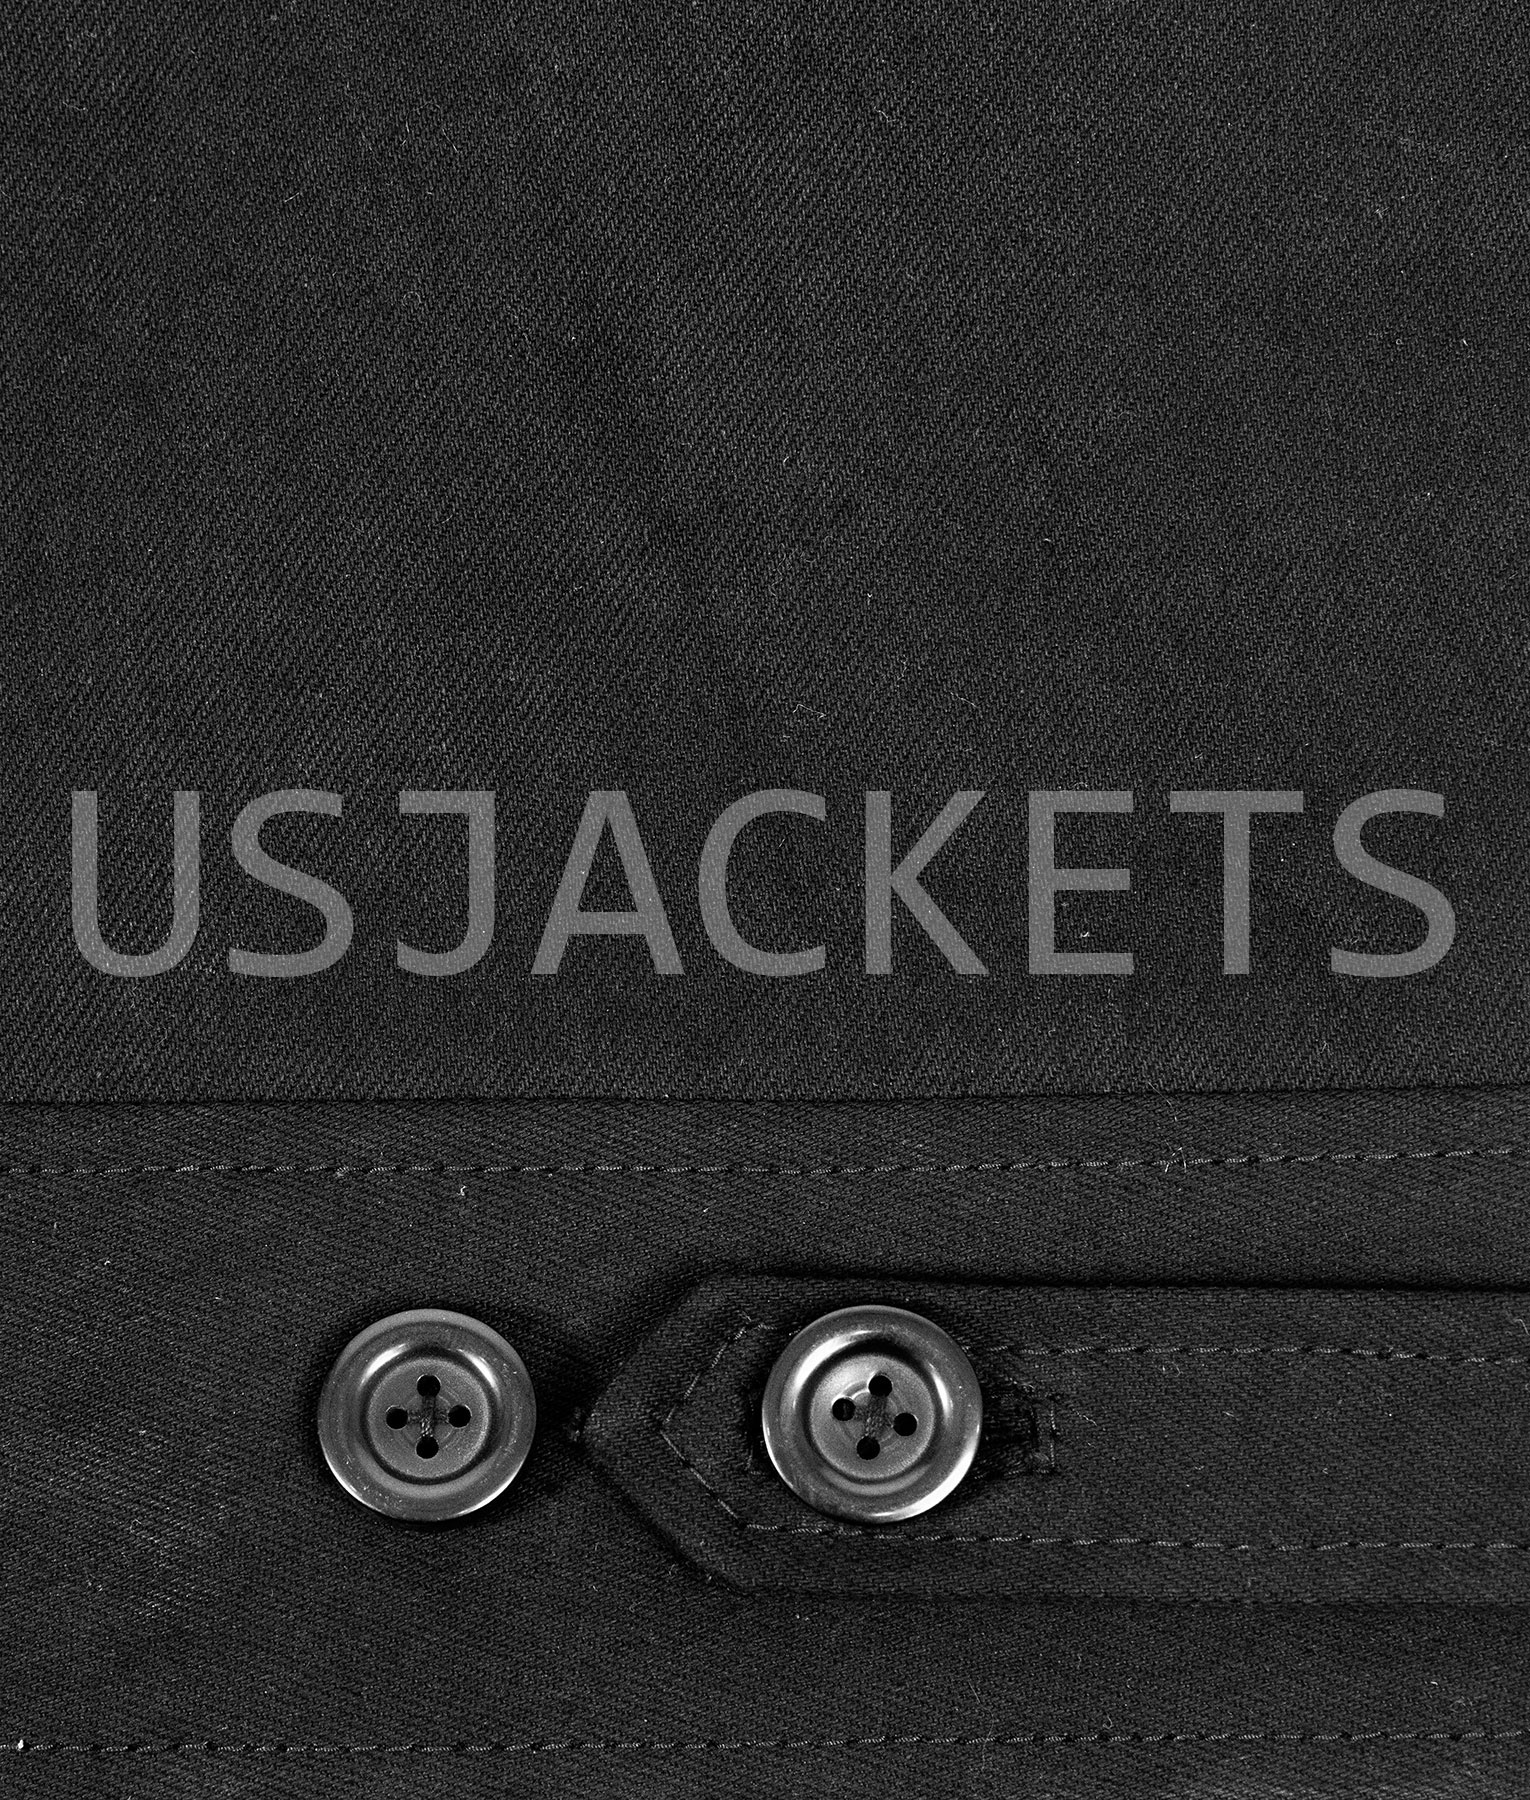 Jack-Reacher-Black-Jacket (7)